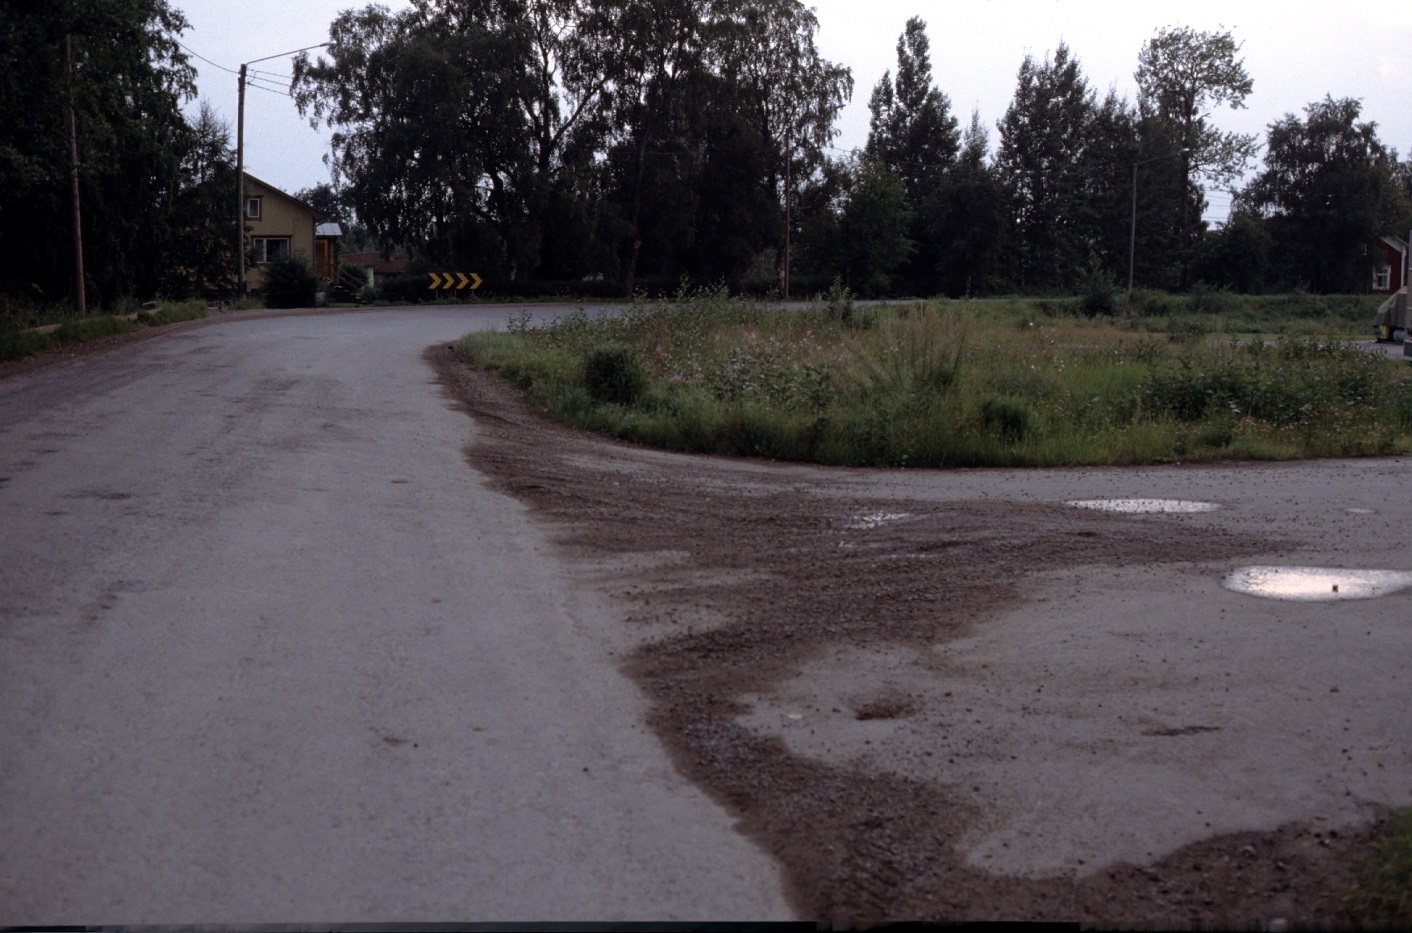 Vid Lindells snickeri gjorde landsvägen en tvär krök. Fotot från 1983 och mitt i bild Heiniös gård och riktigt i högra kanten skymtar Grans Lennart gård.